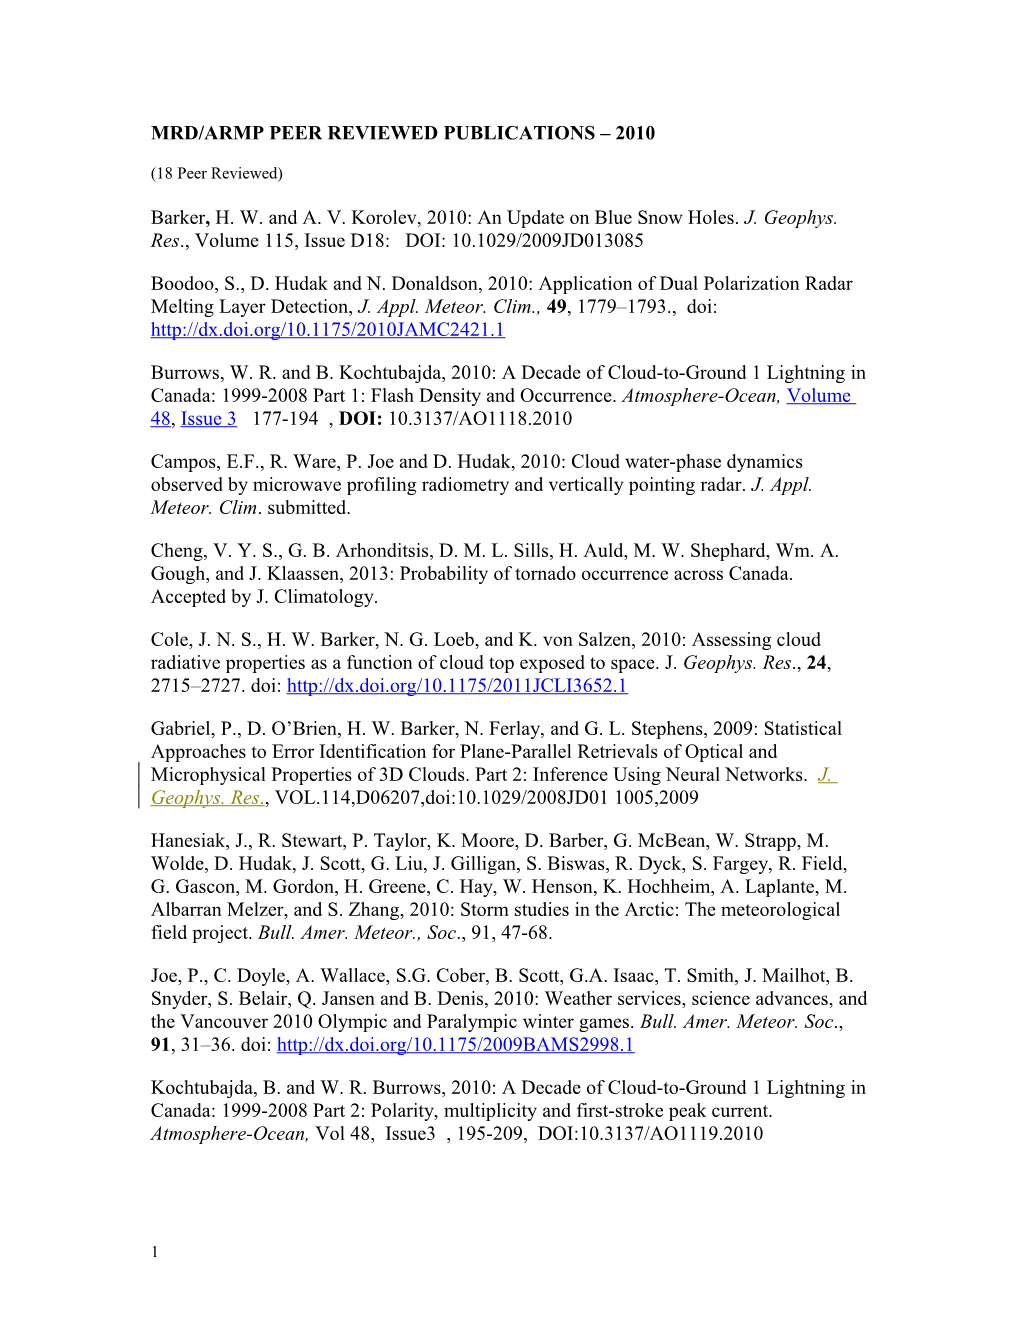 Mrd/Armp Peer Reviewed Publications 2010